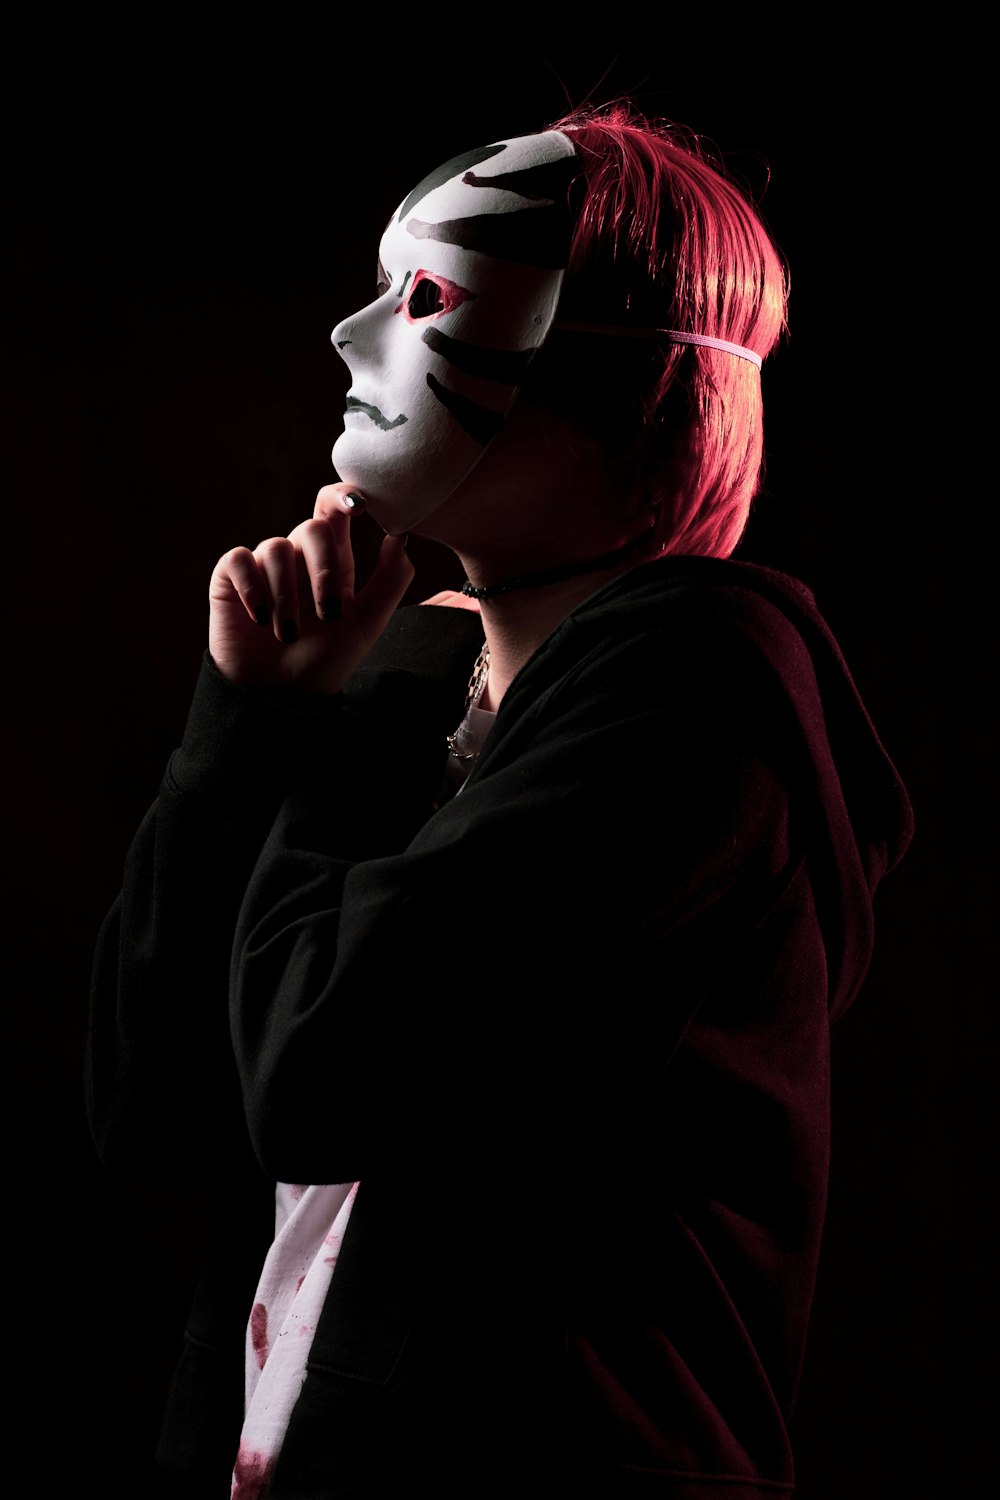 une femme portant un masque